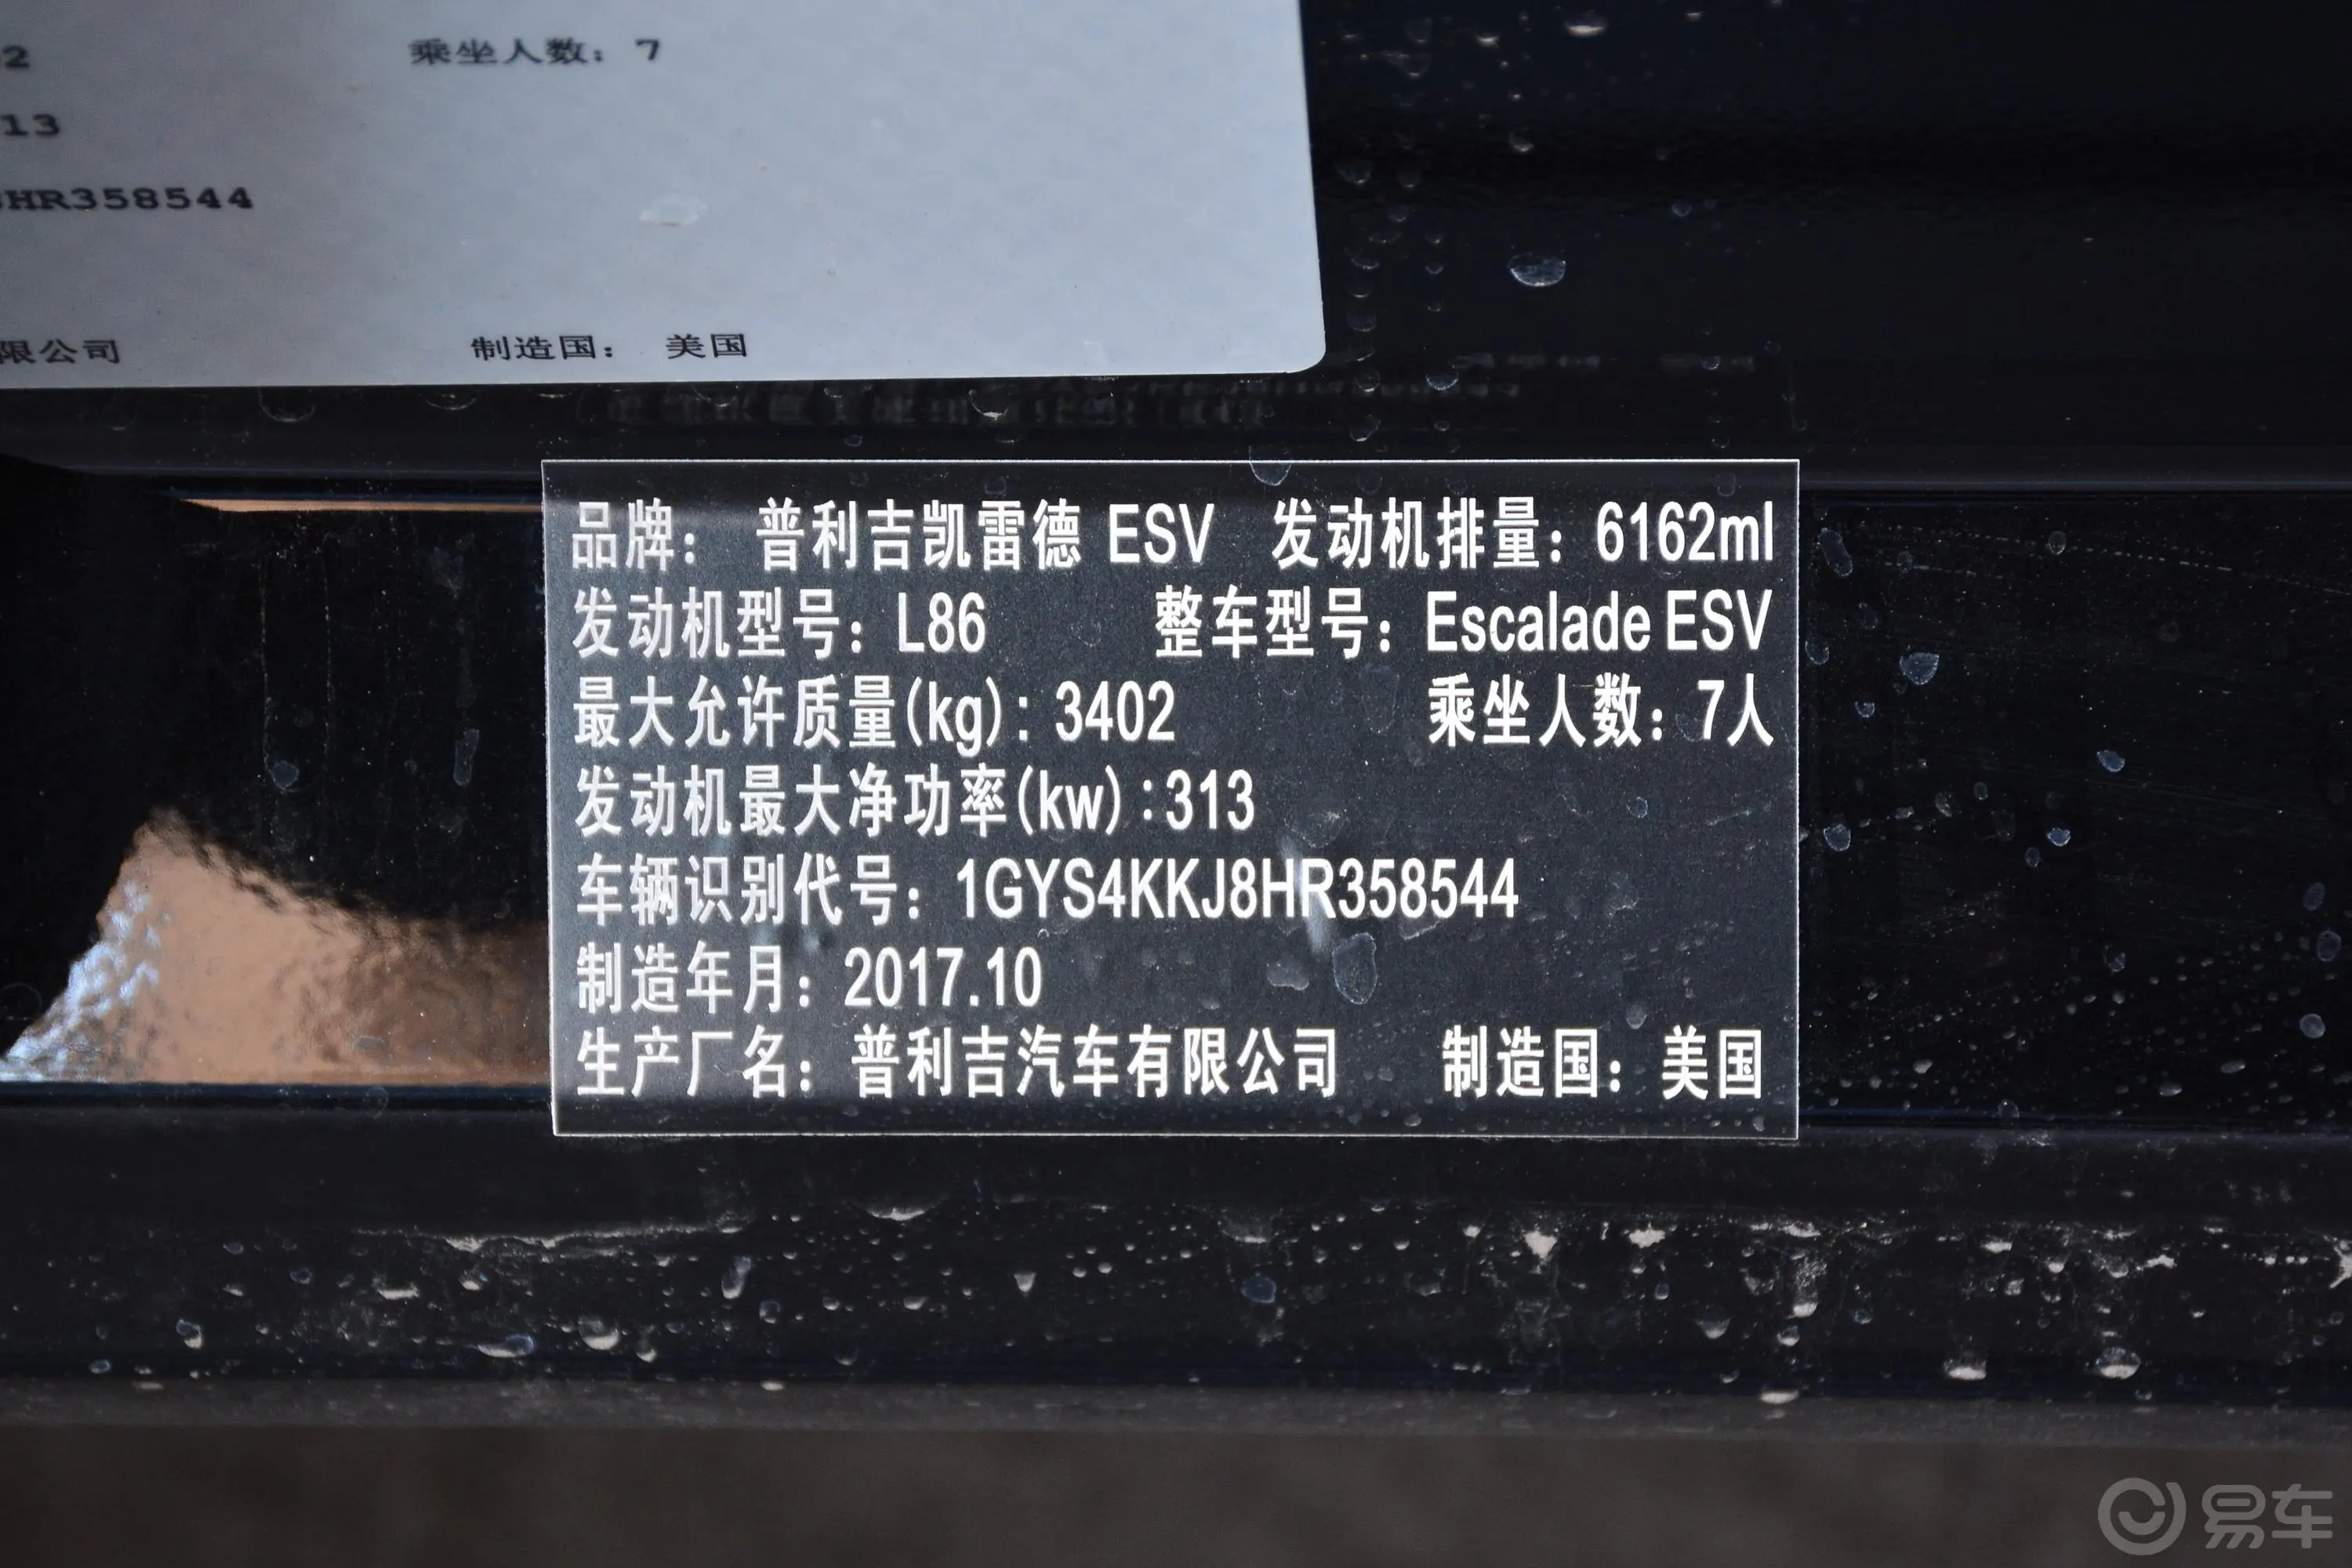 凯雷德6.2L ESV铂金版加长版车辆信息铭牌